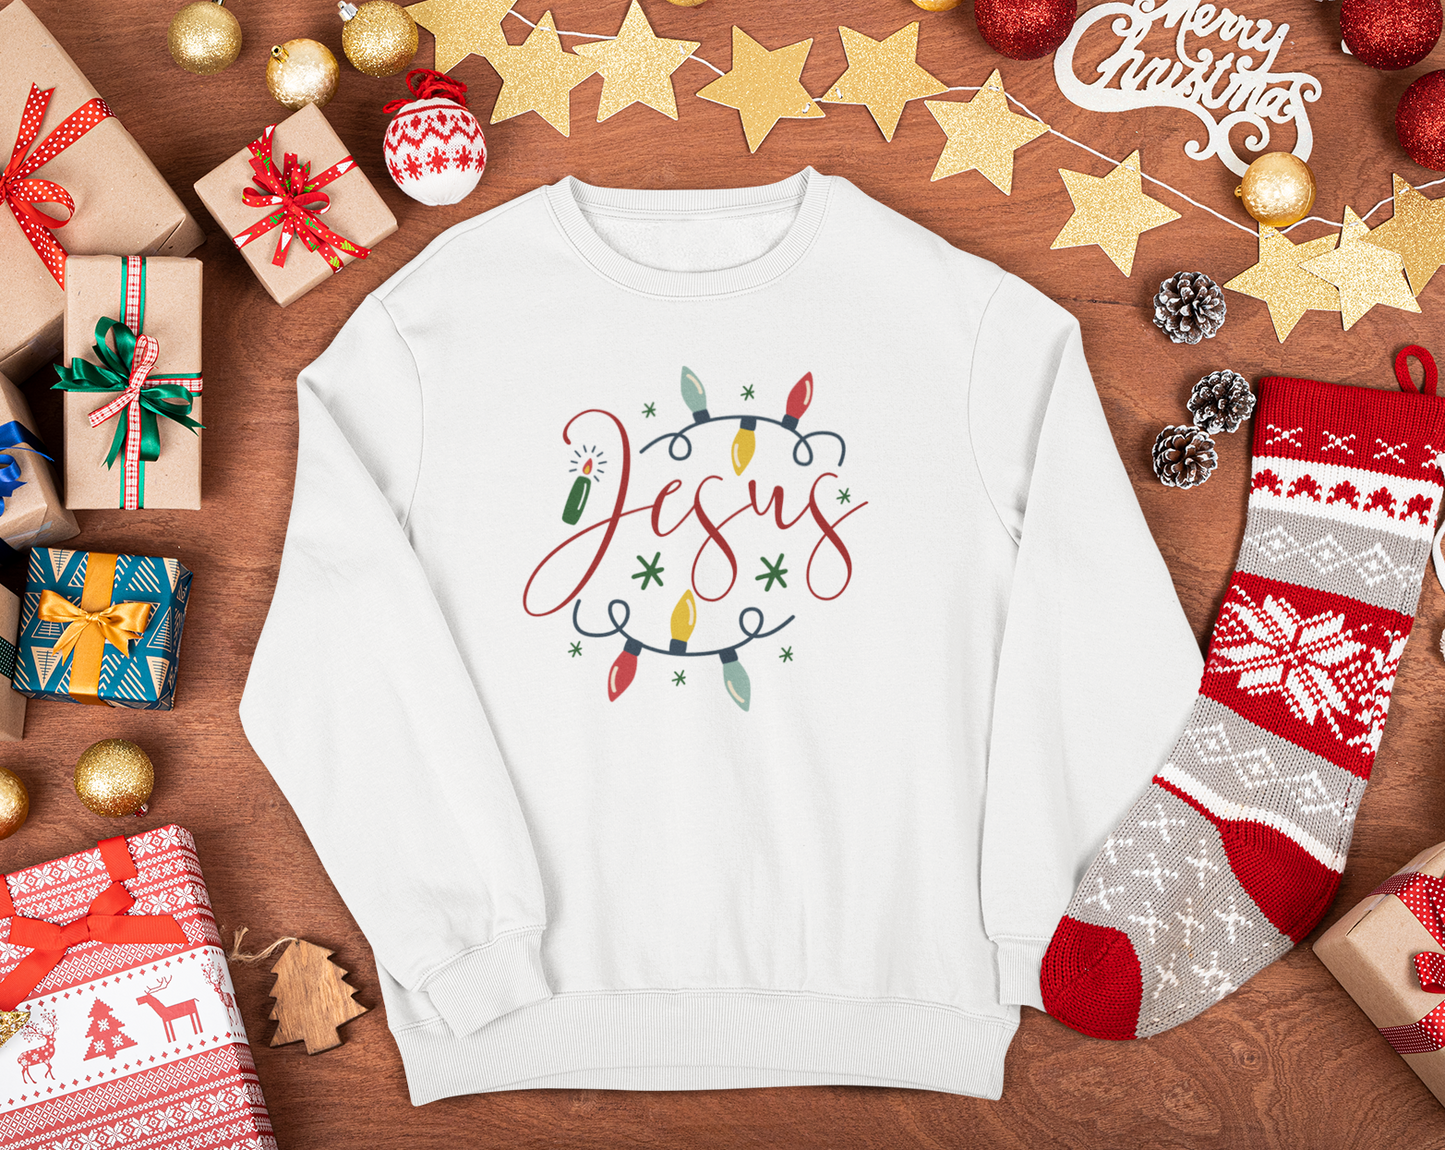 Jesus | Christmas | Sweatshirt